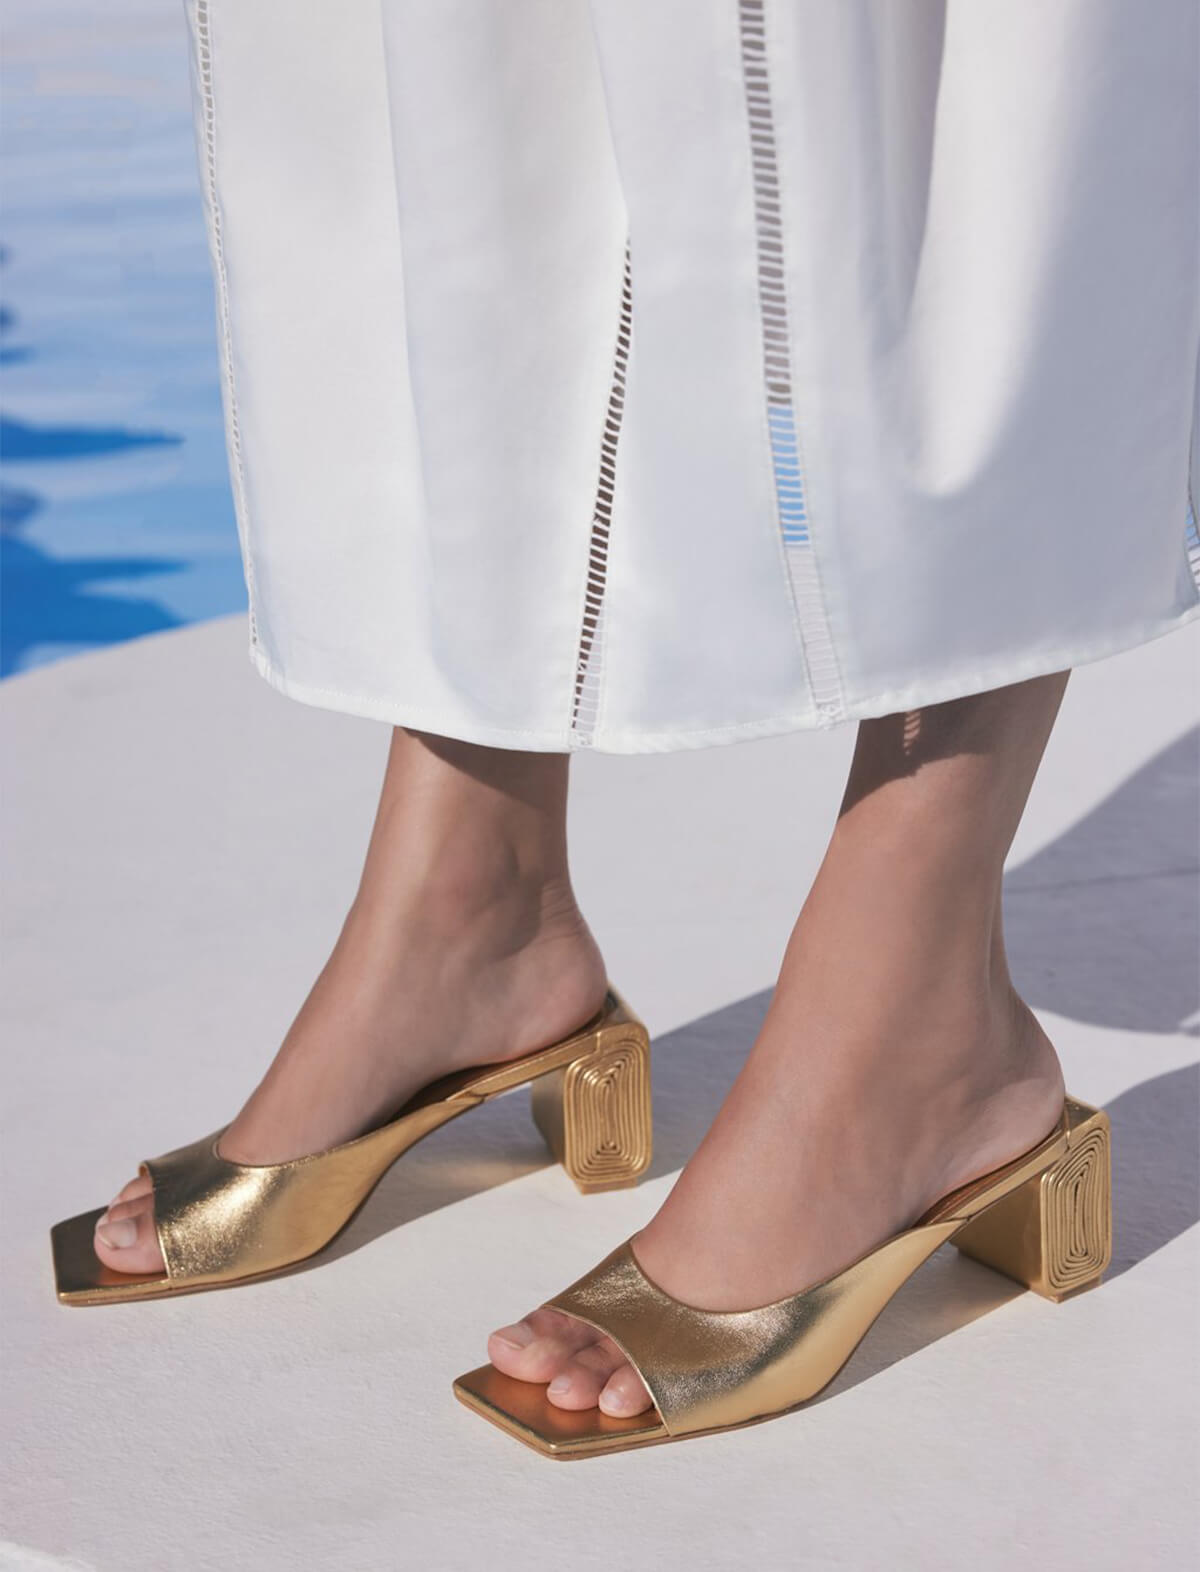 CULT GAIA Nala Sandals in Gold